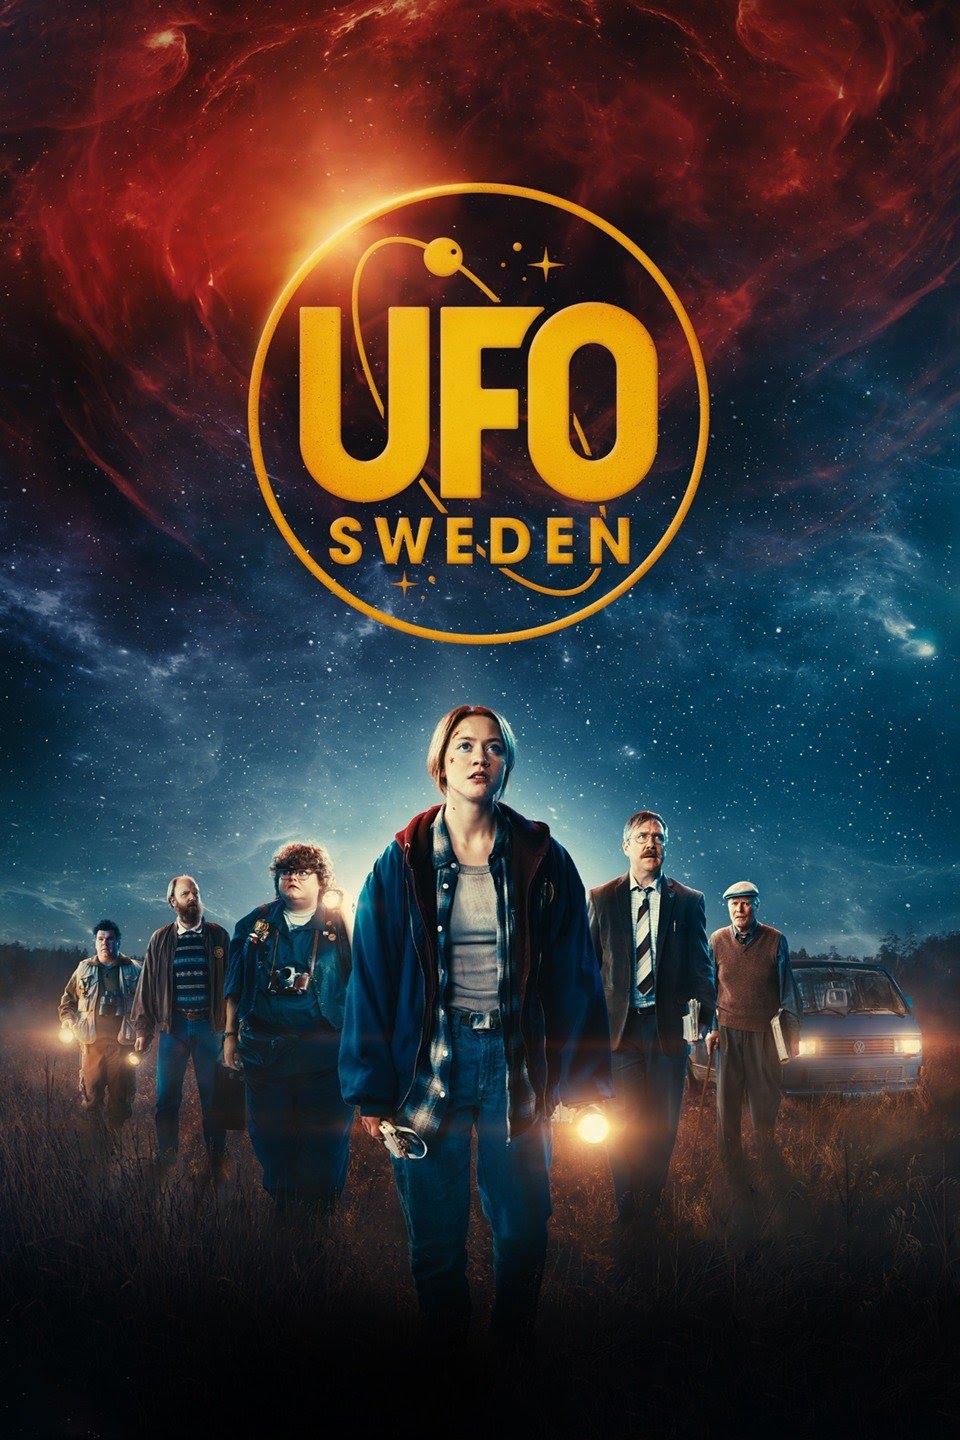 مشاهدة فيلم UFO Sweden 2022 مترجم اون لاين